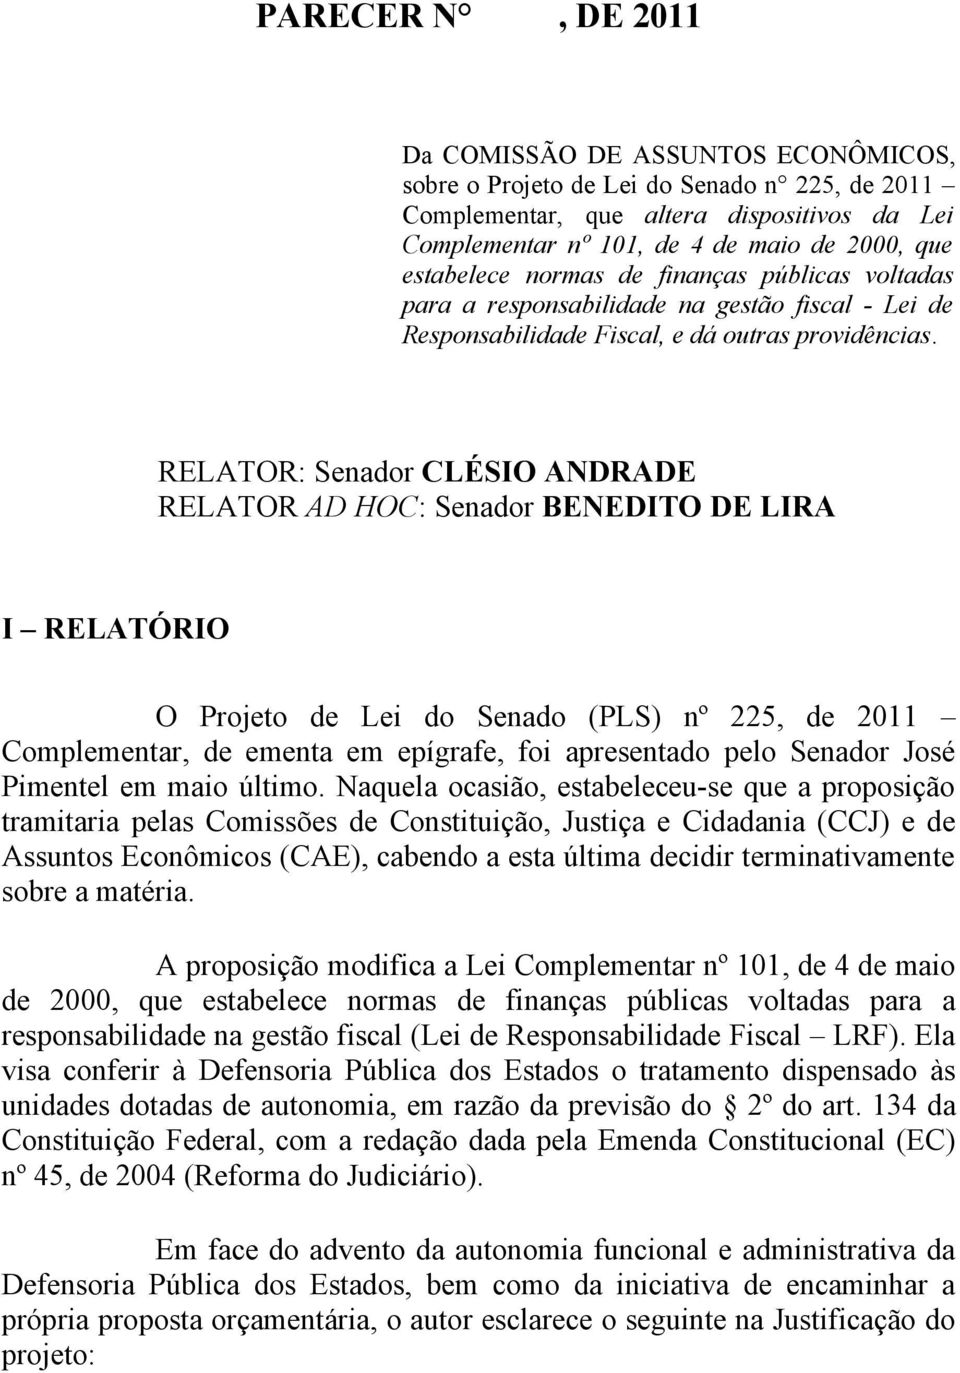 RELATOR: Senador CLÉSIO ANDRADE RELATOR AD HOC: Senador BENEDITO DE LIRA I RELATÓRIO O Projeto de Lei do Senado (PLS) nº 225, de 2011 Complementar, de ementa em epígrafe, foi apresentado pelo Senador